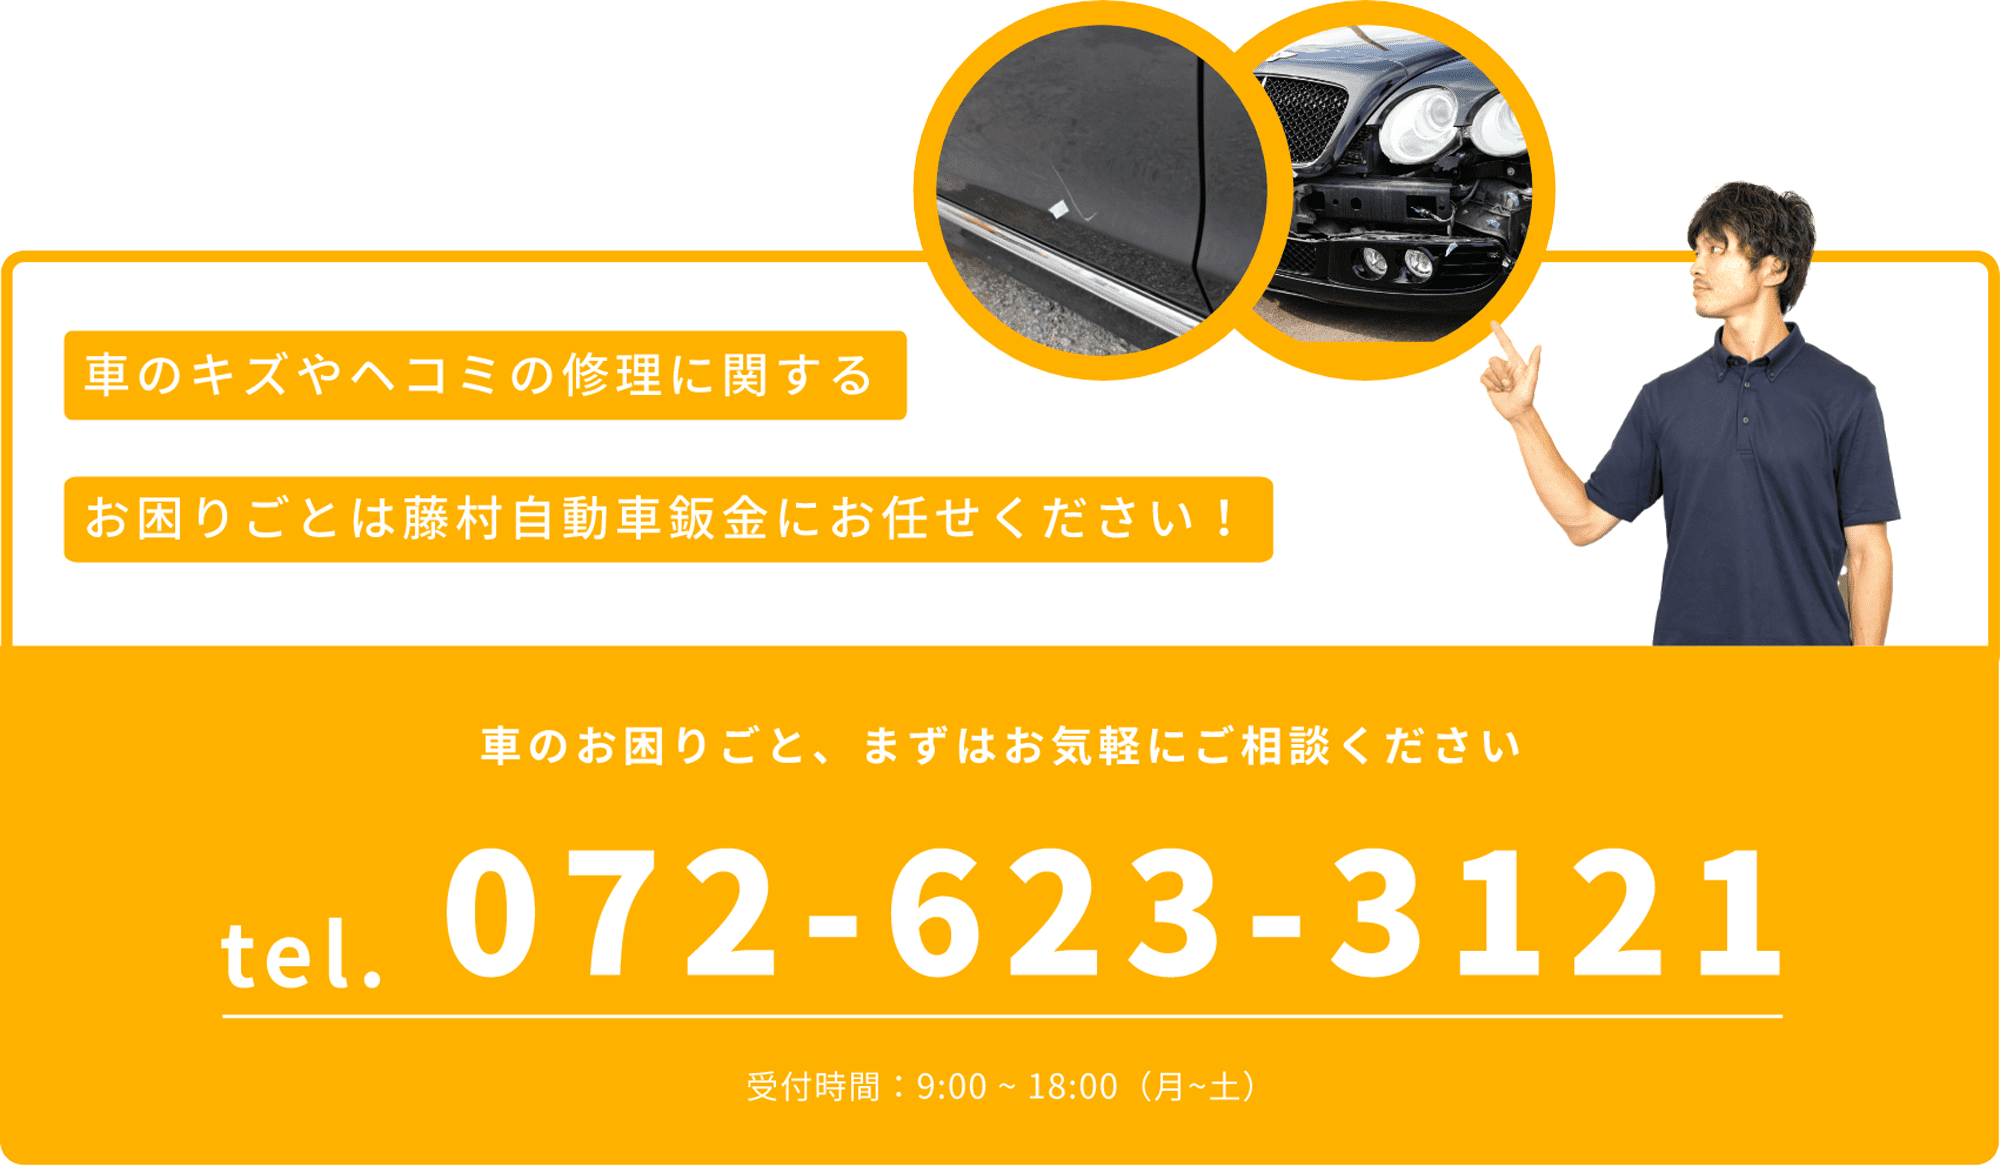 車のキズやヘコミの修理に関するお困りごとは藤村自動車鈑金にお任せください！